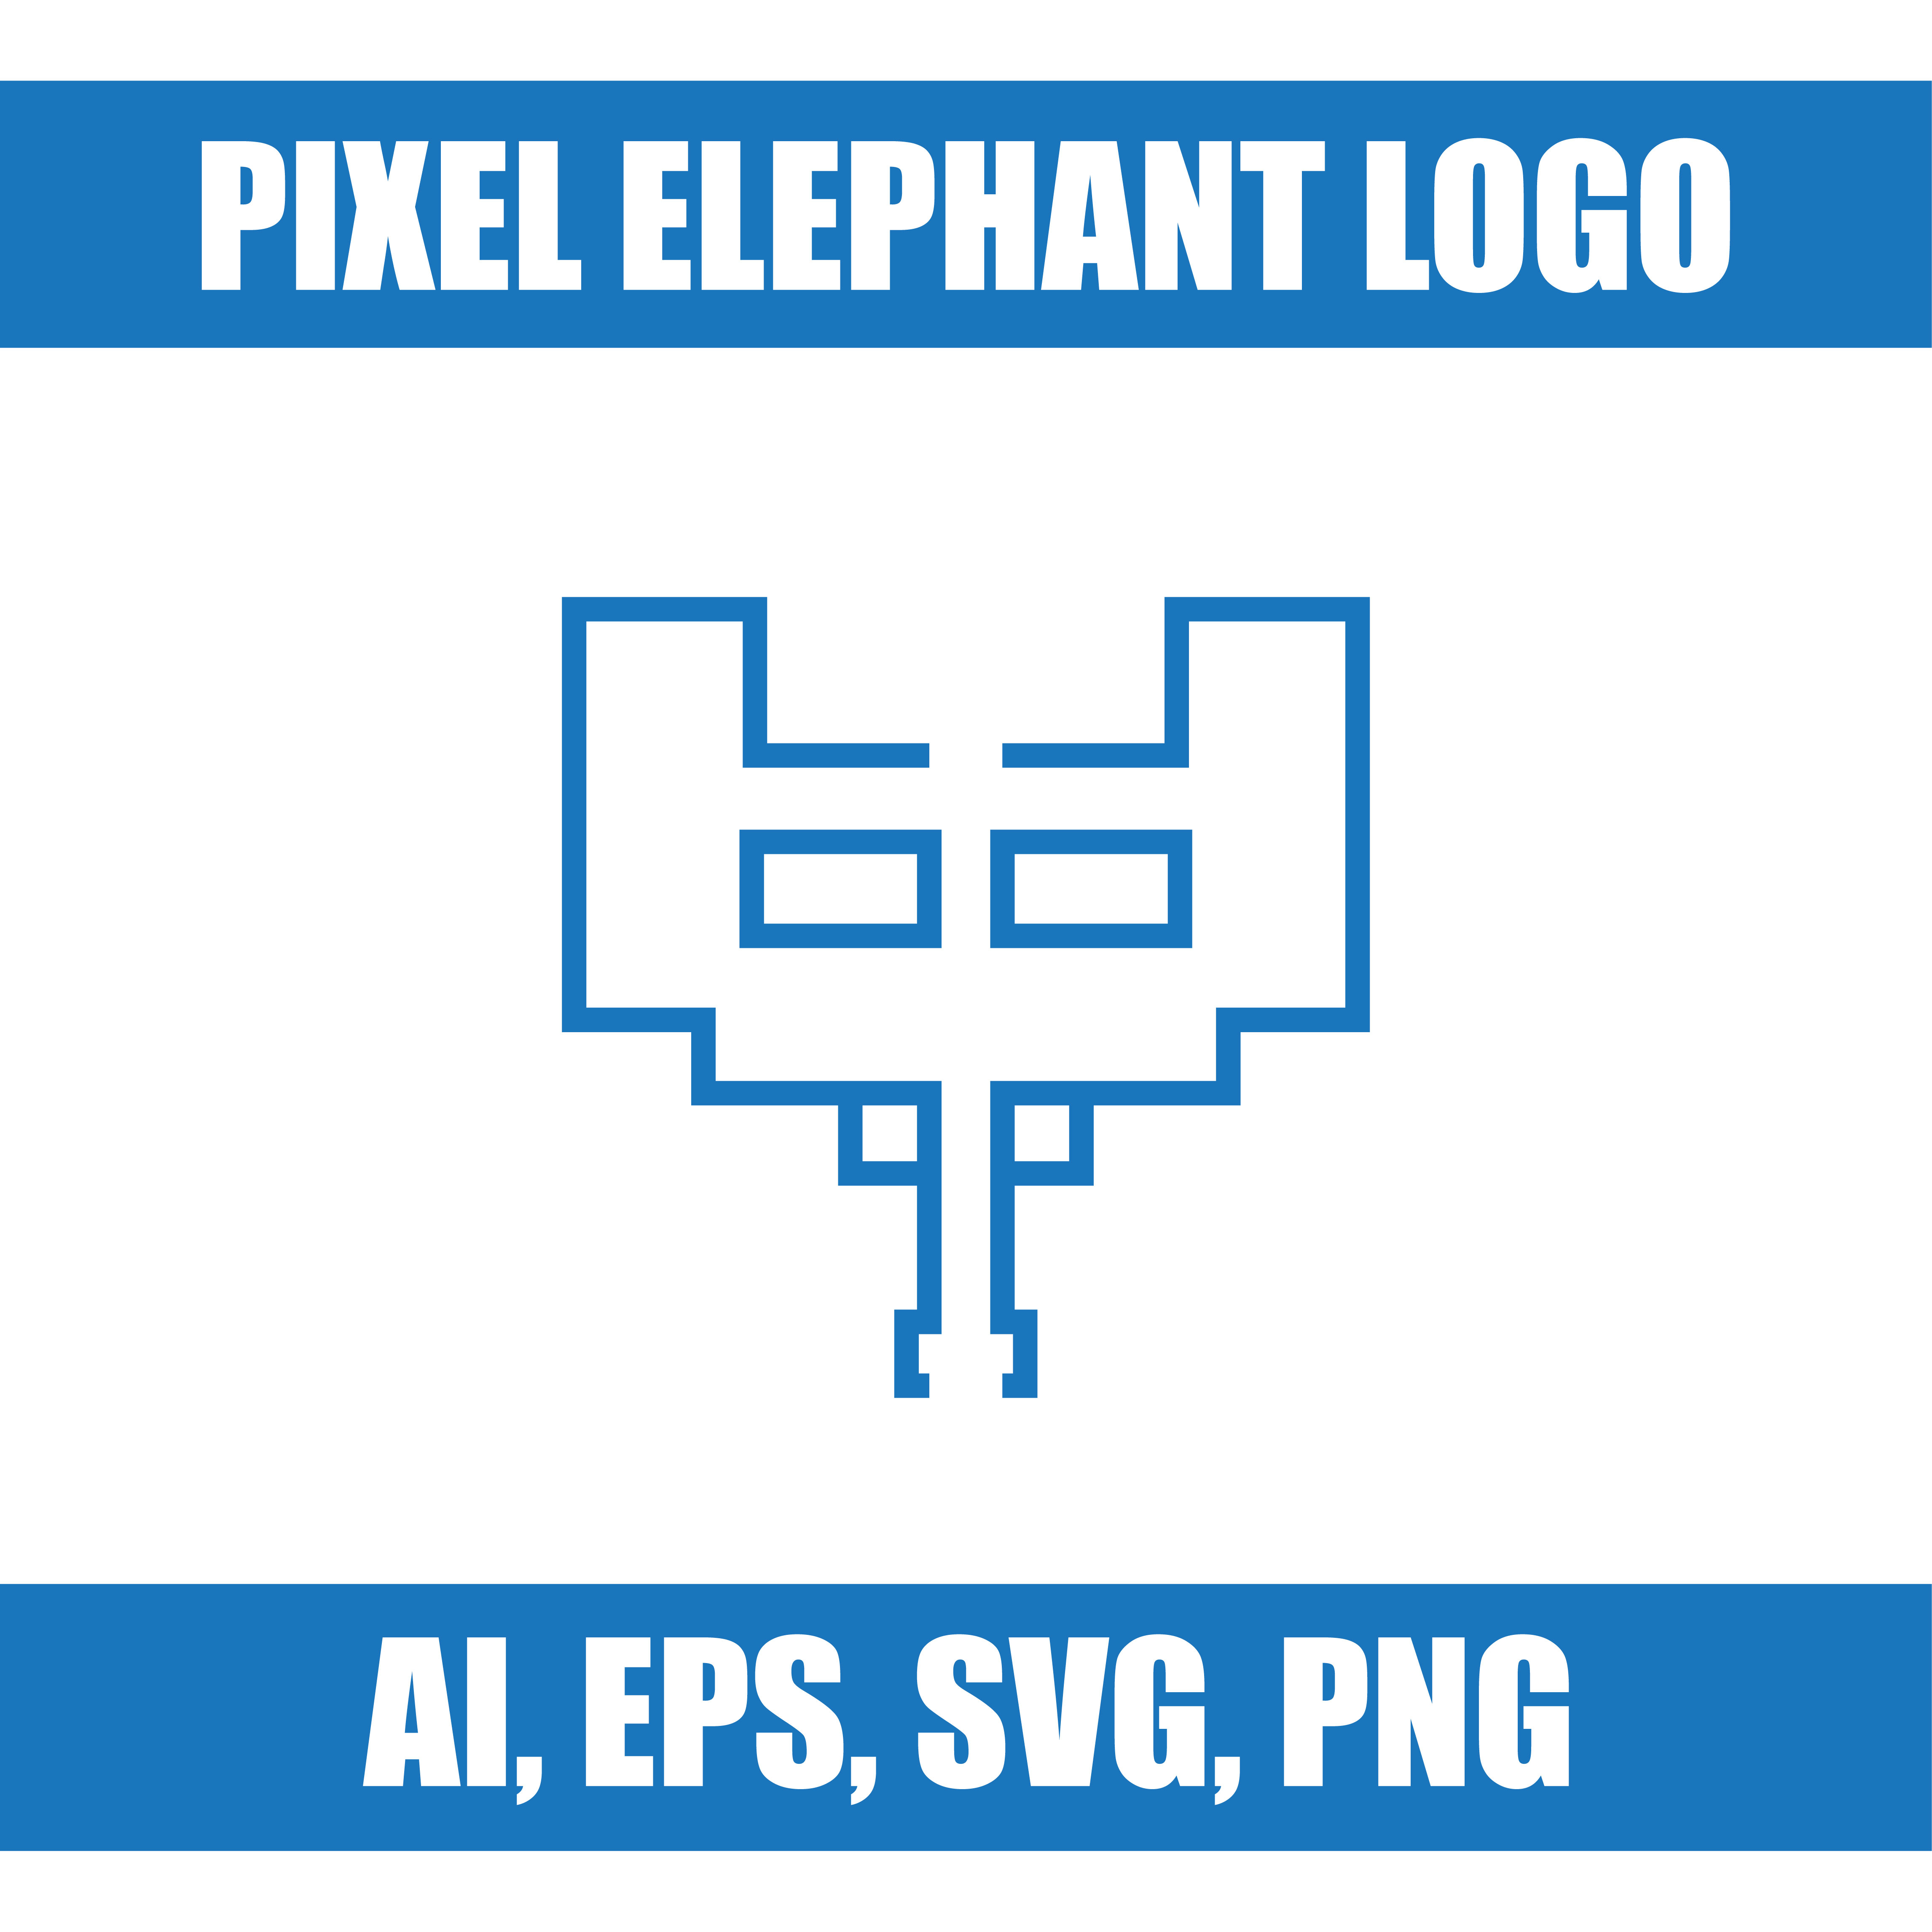 pixel elephant logo cover image.